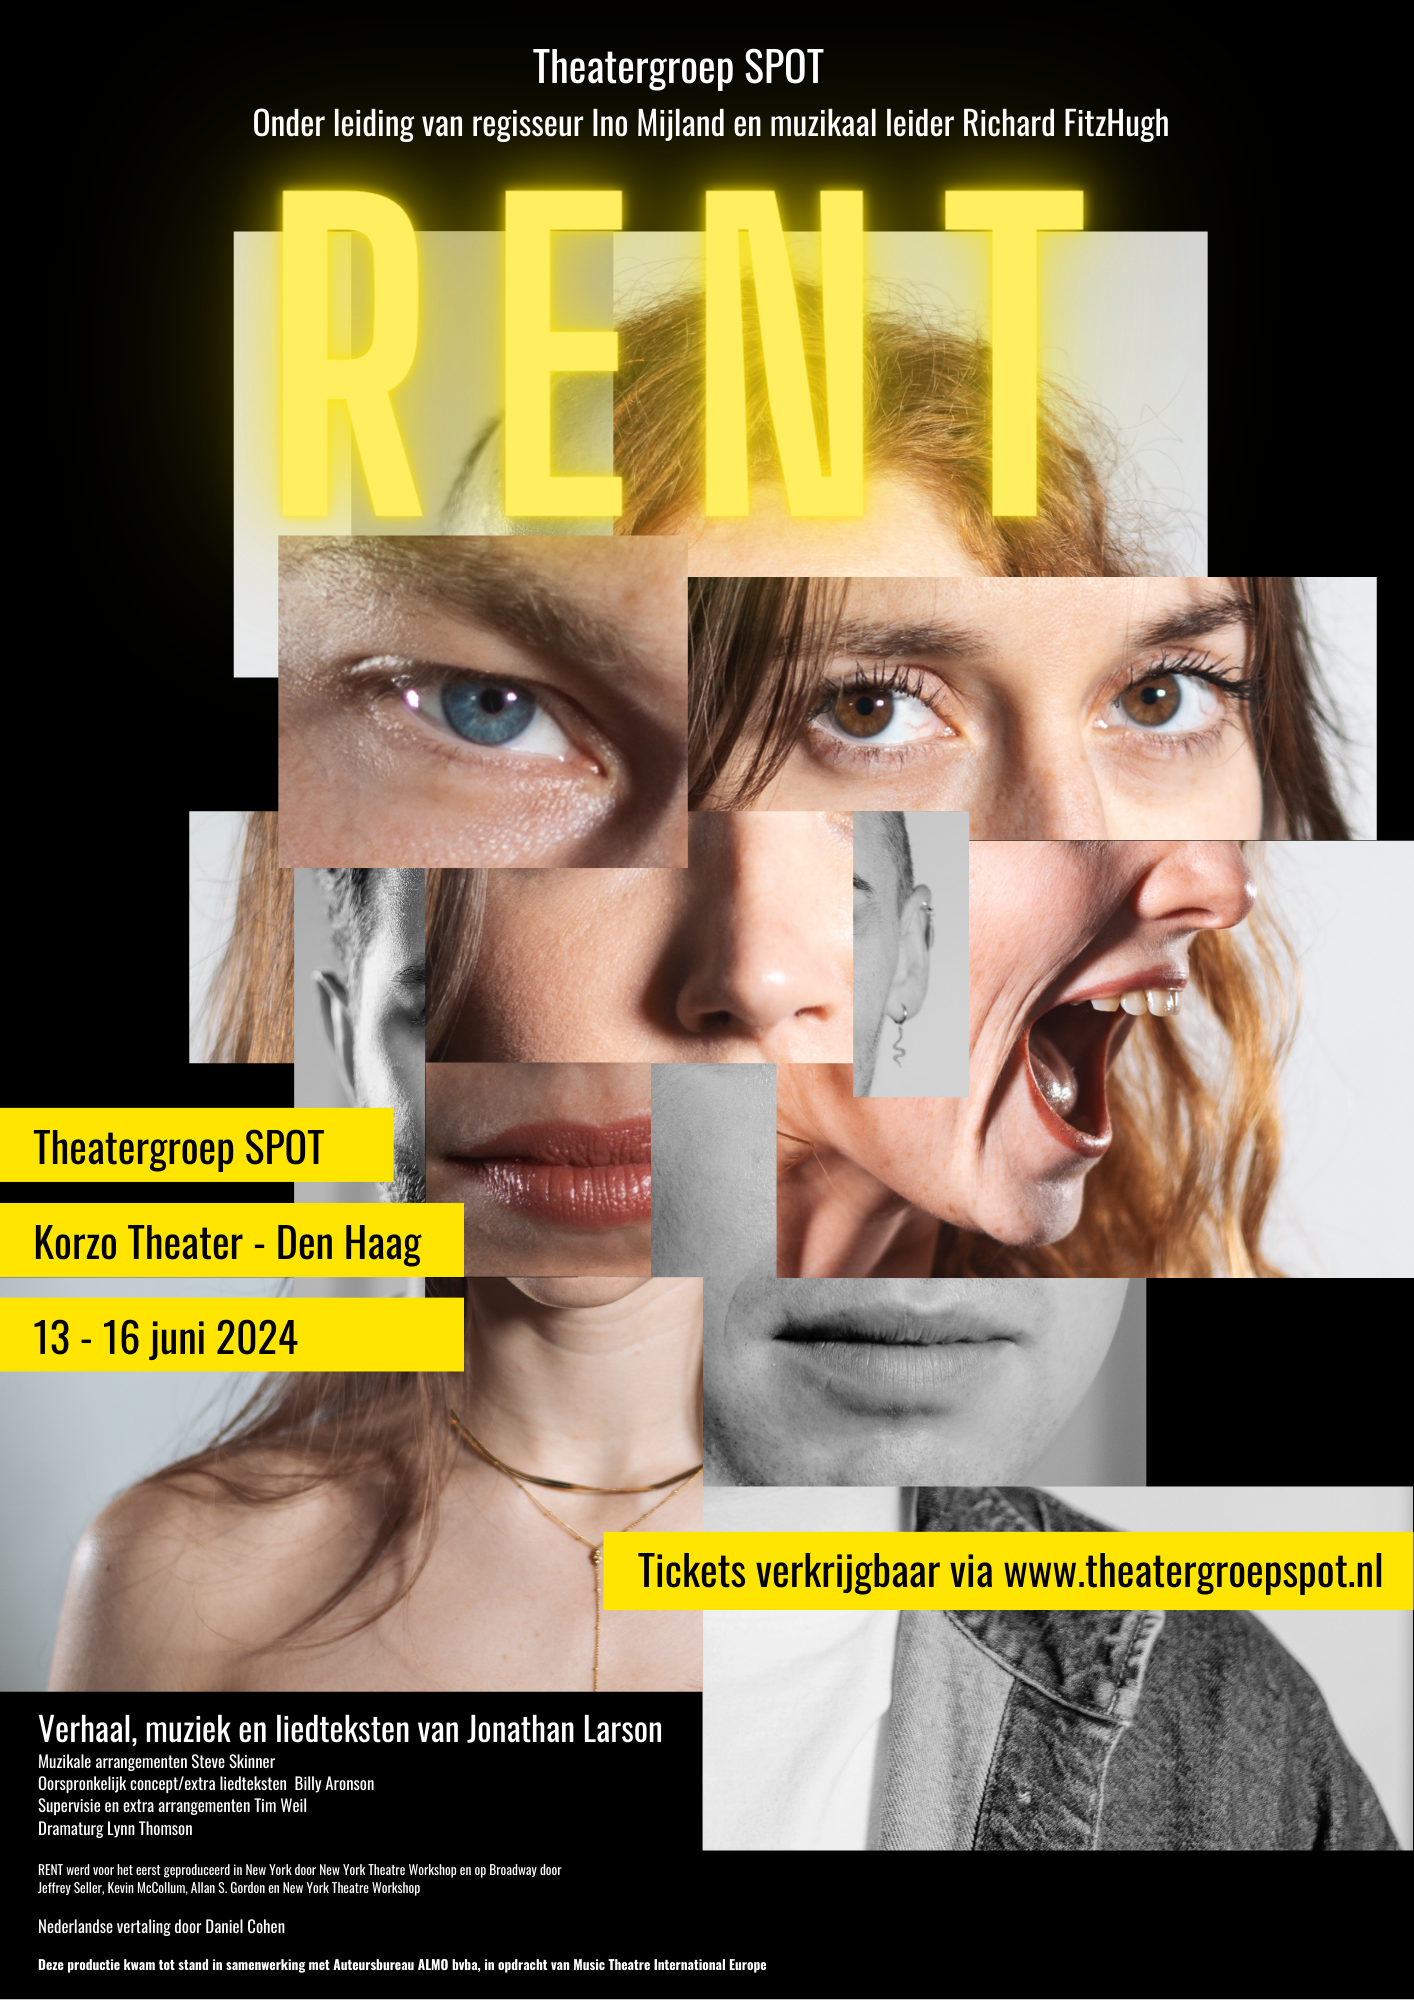 Theatergroep SPOT speelt klassieker RENT in Den Haag